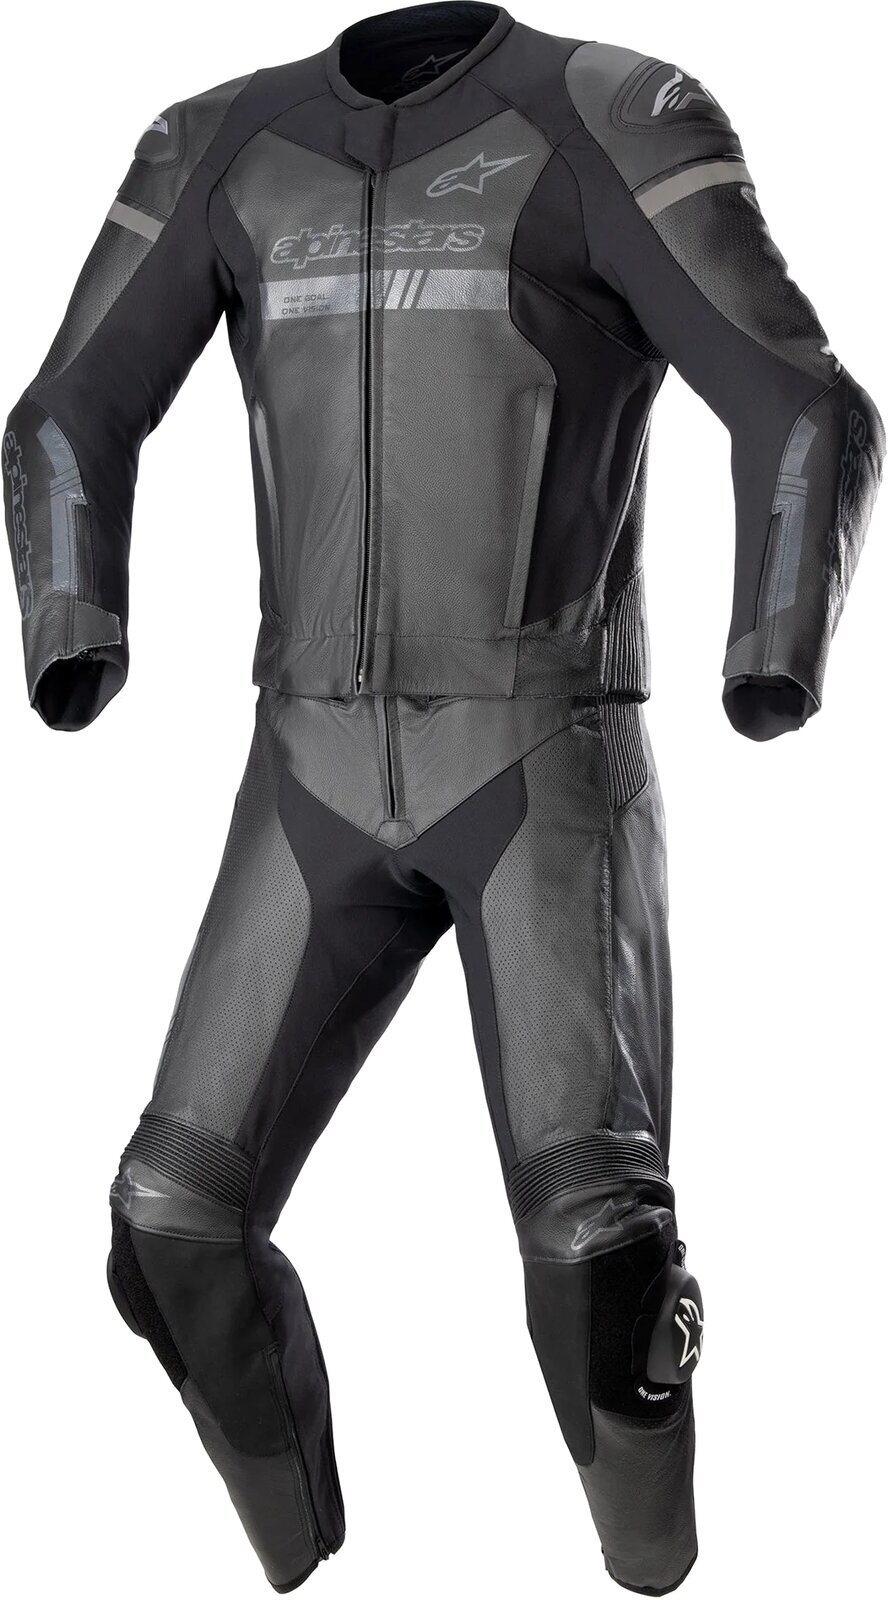 Todelt motorcykeldragt Alpinestars GP Force Chaser Leather Suit 2 Pc Black/Black 52 Todelt motorcykeldragt